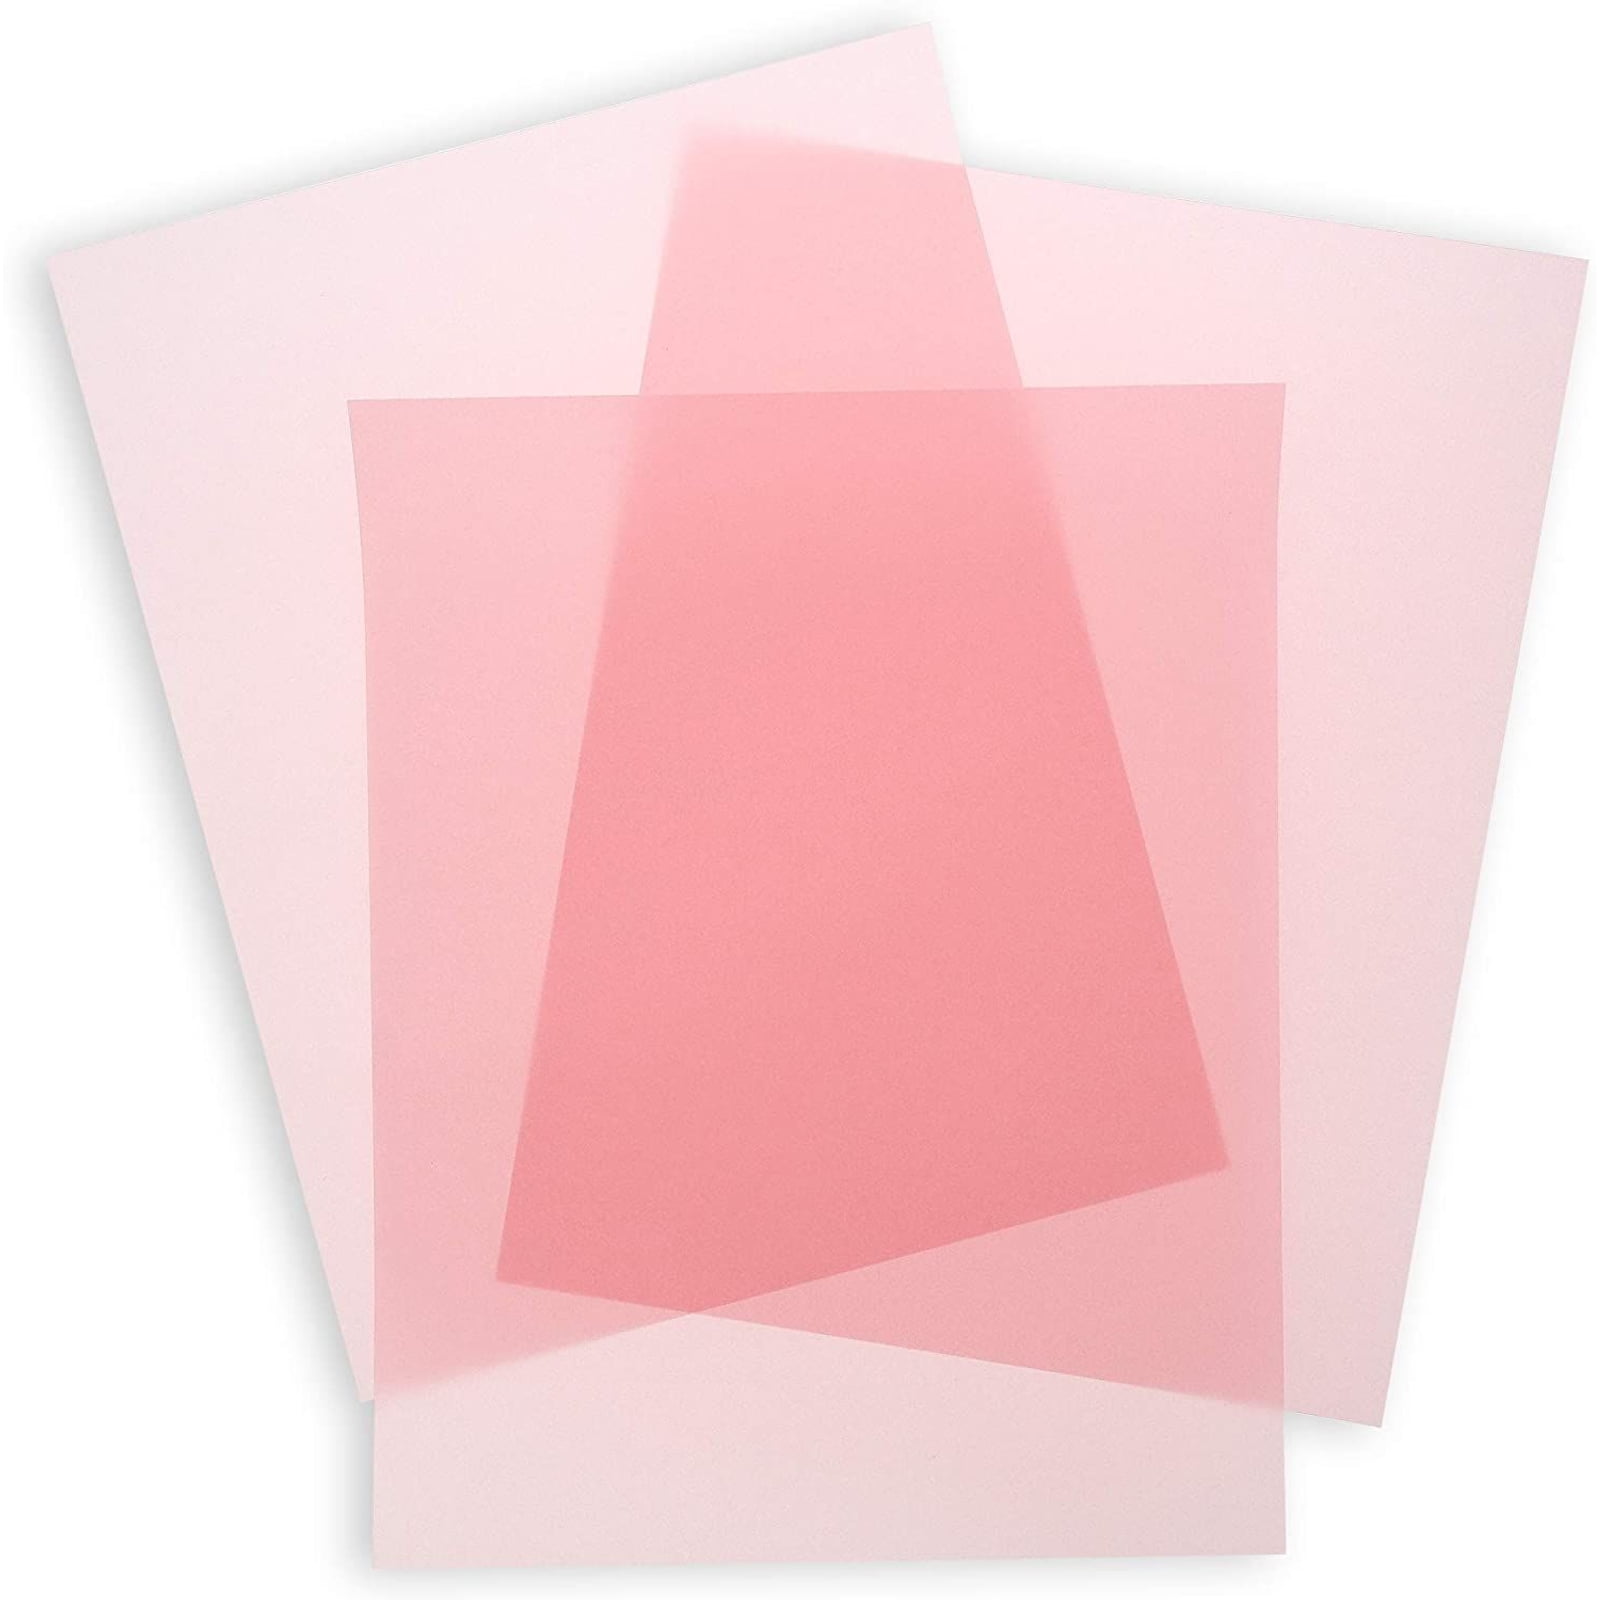 Neenah Vellum Paper 8.5 x 11 Assorted Polka Dots Other 15 sheet pks